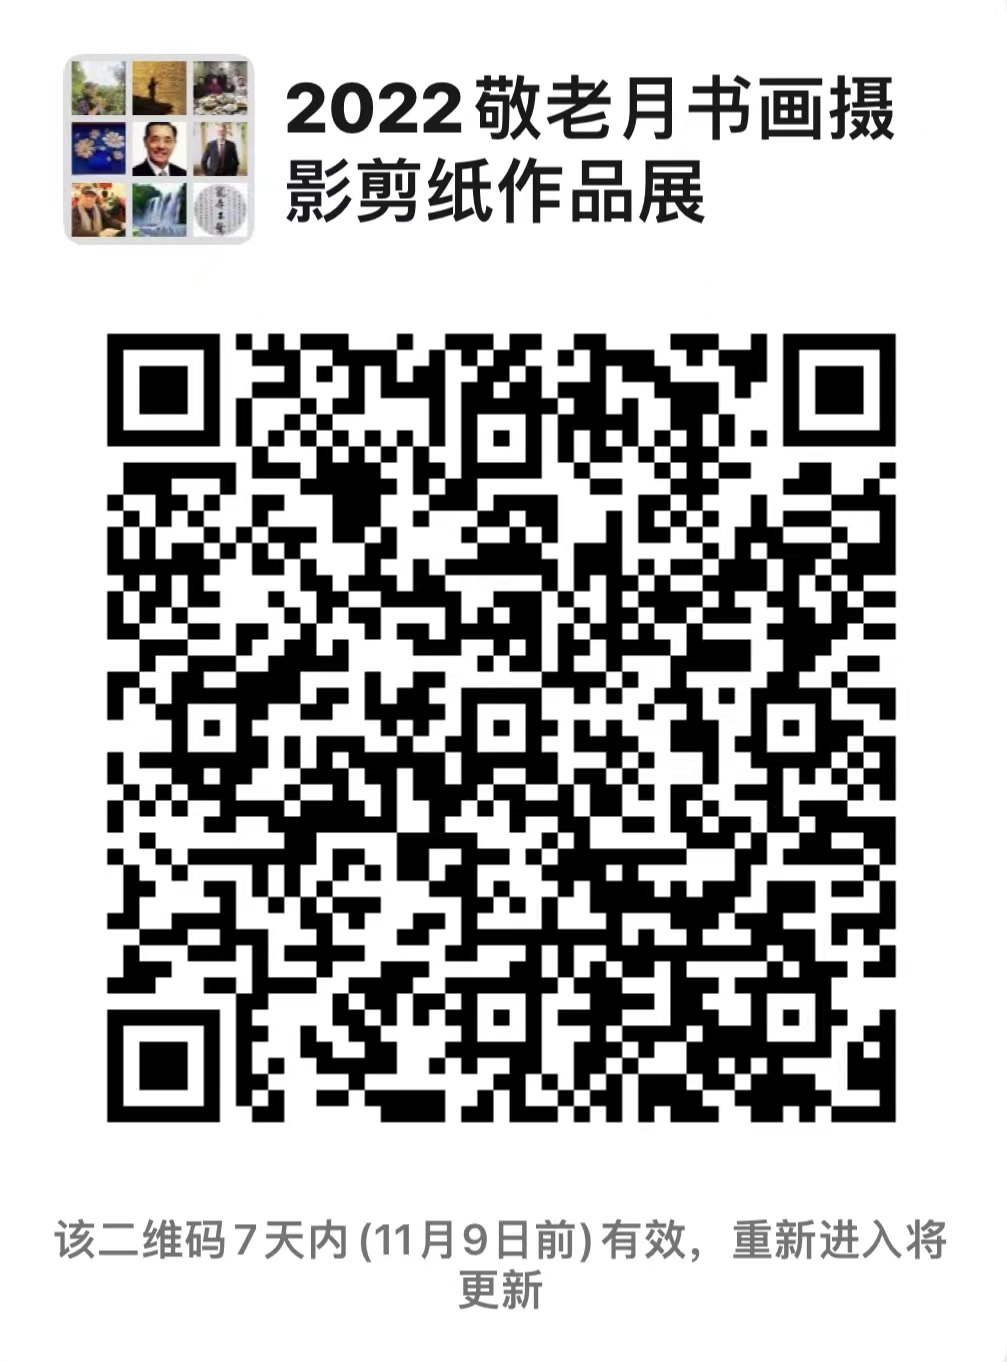 WeChat Image_20221102200302.jpg